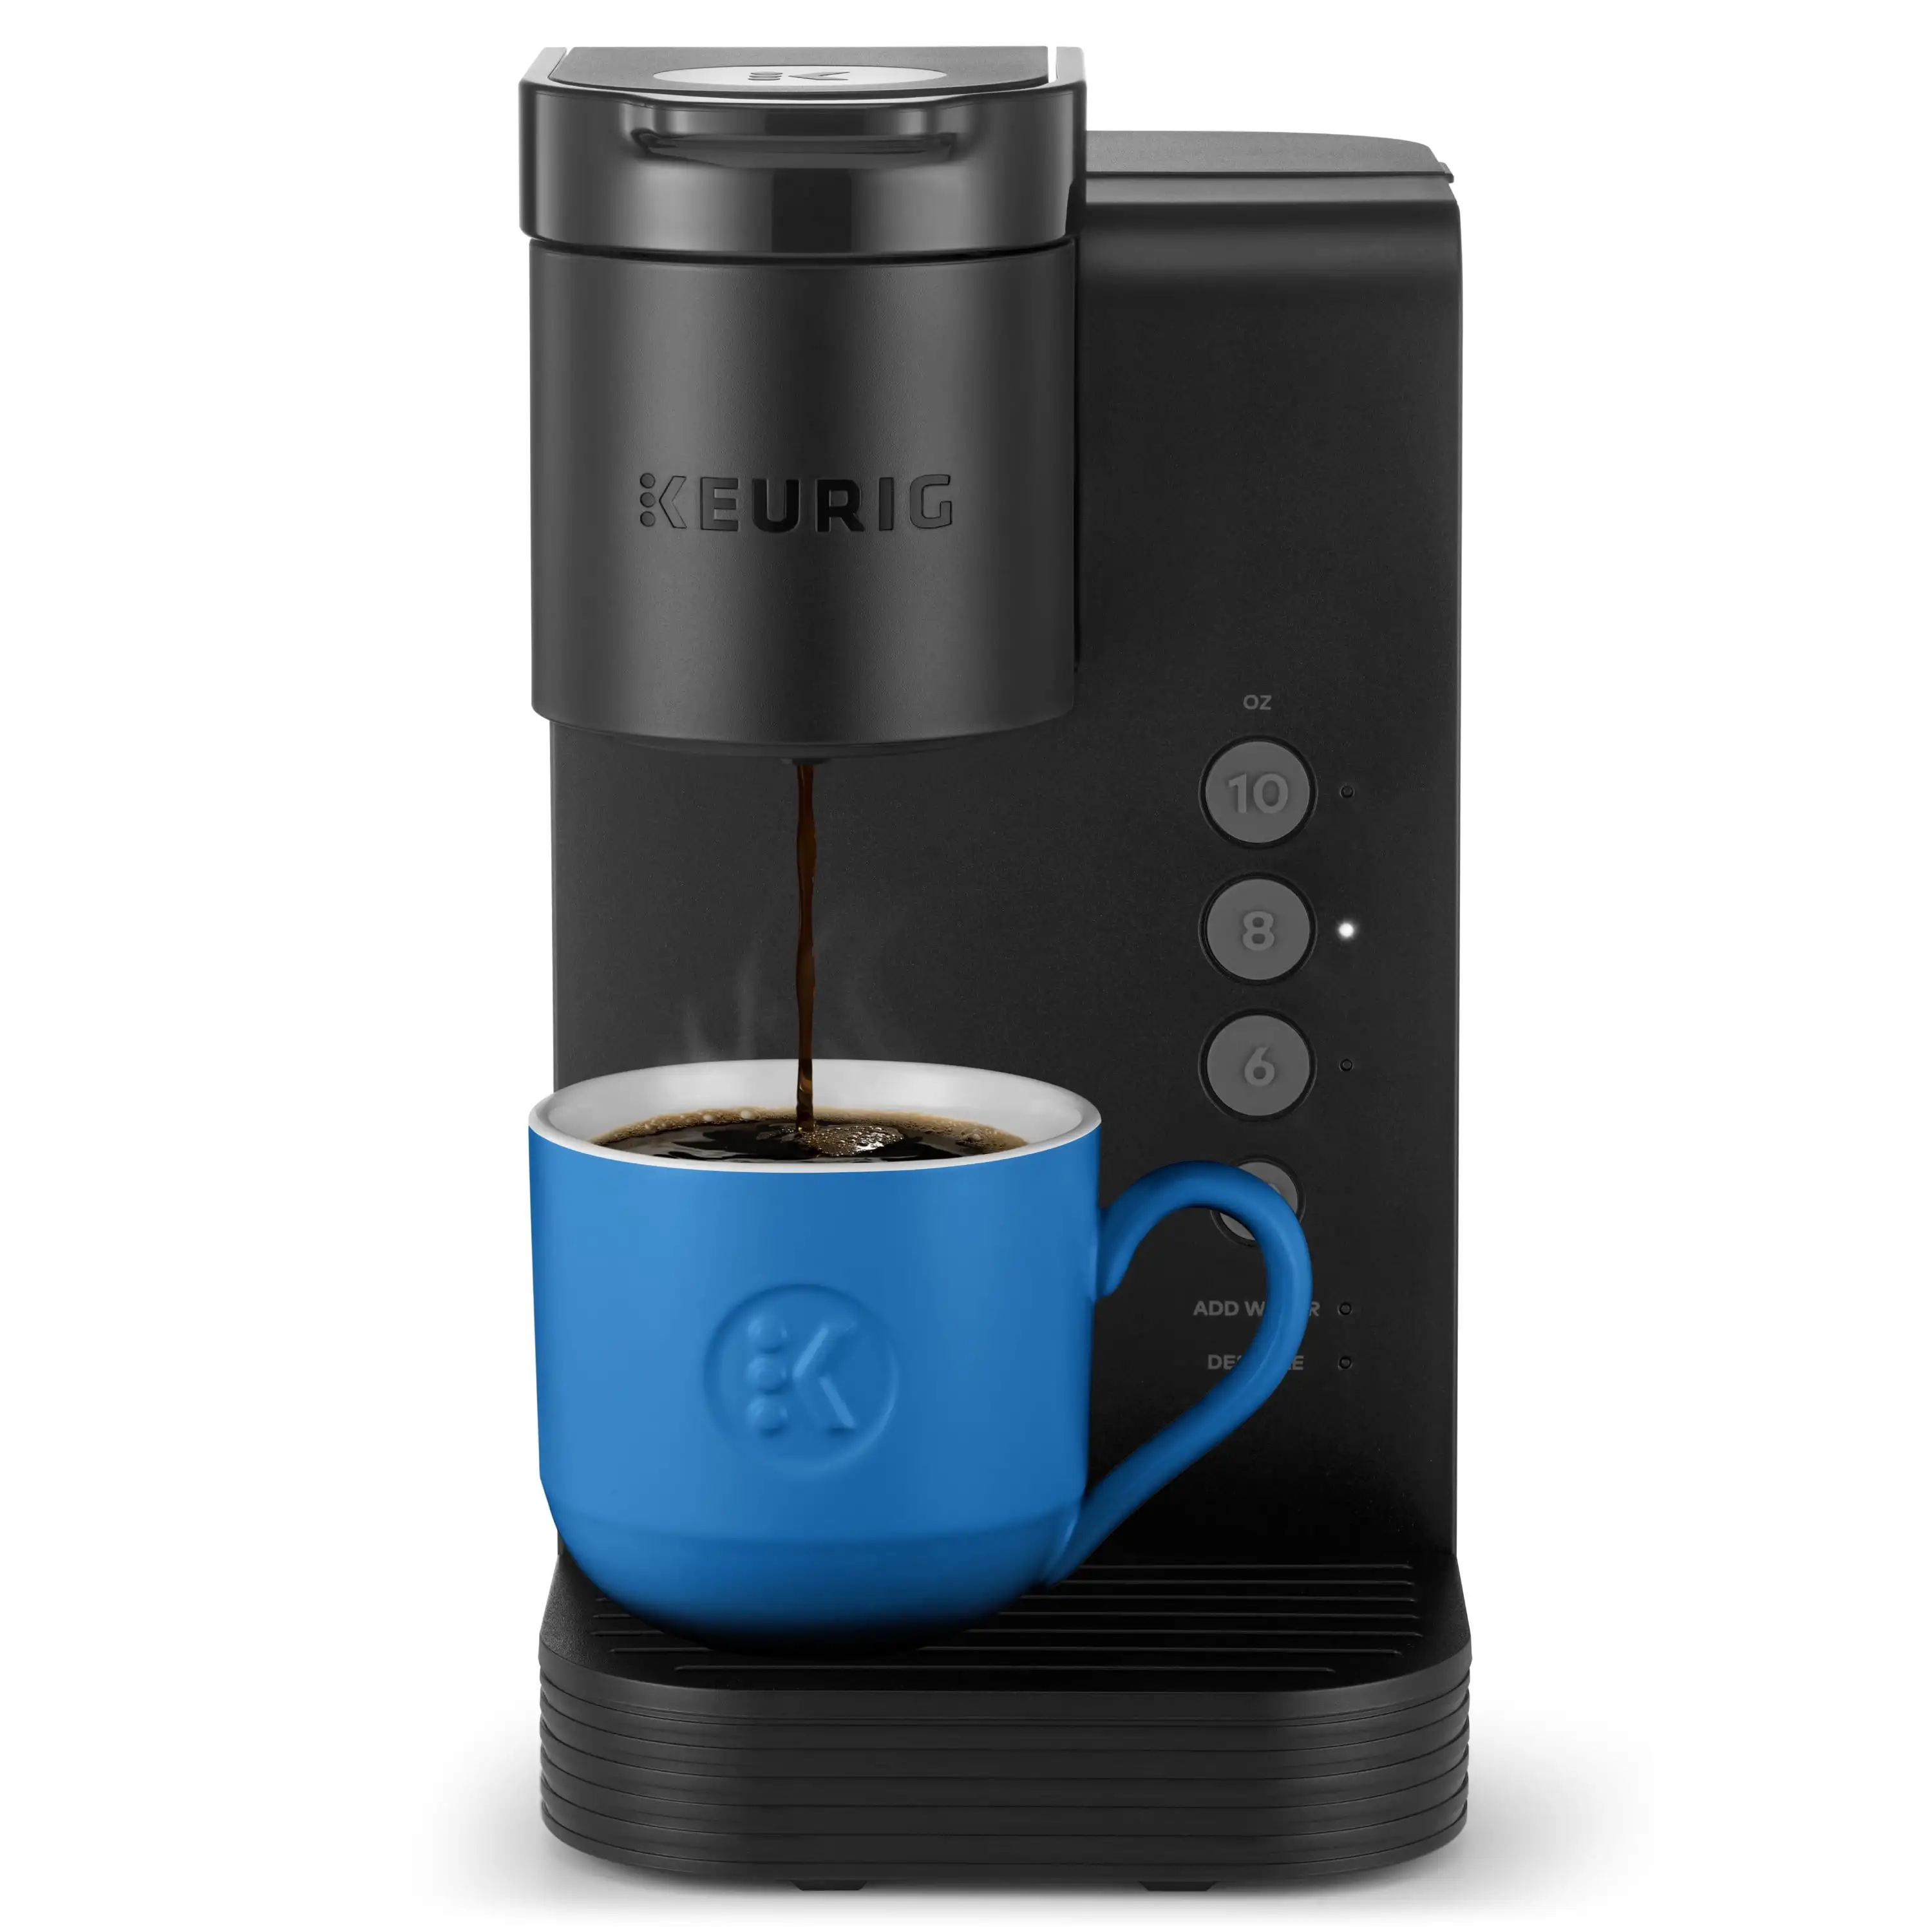 

Keurig K-Express Essentials Single Serve K-Cup Капсульная кофеварка, черный цвет